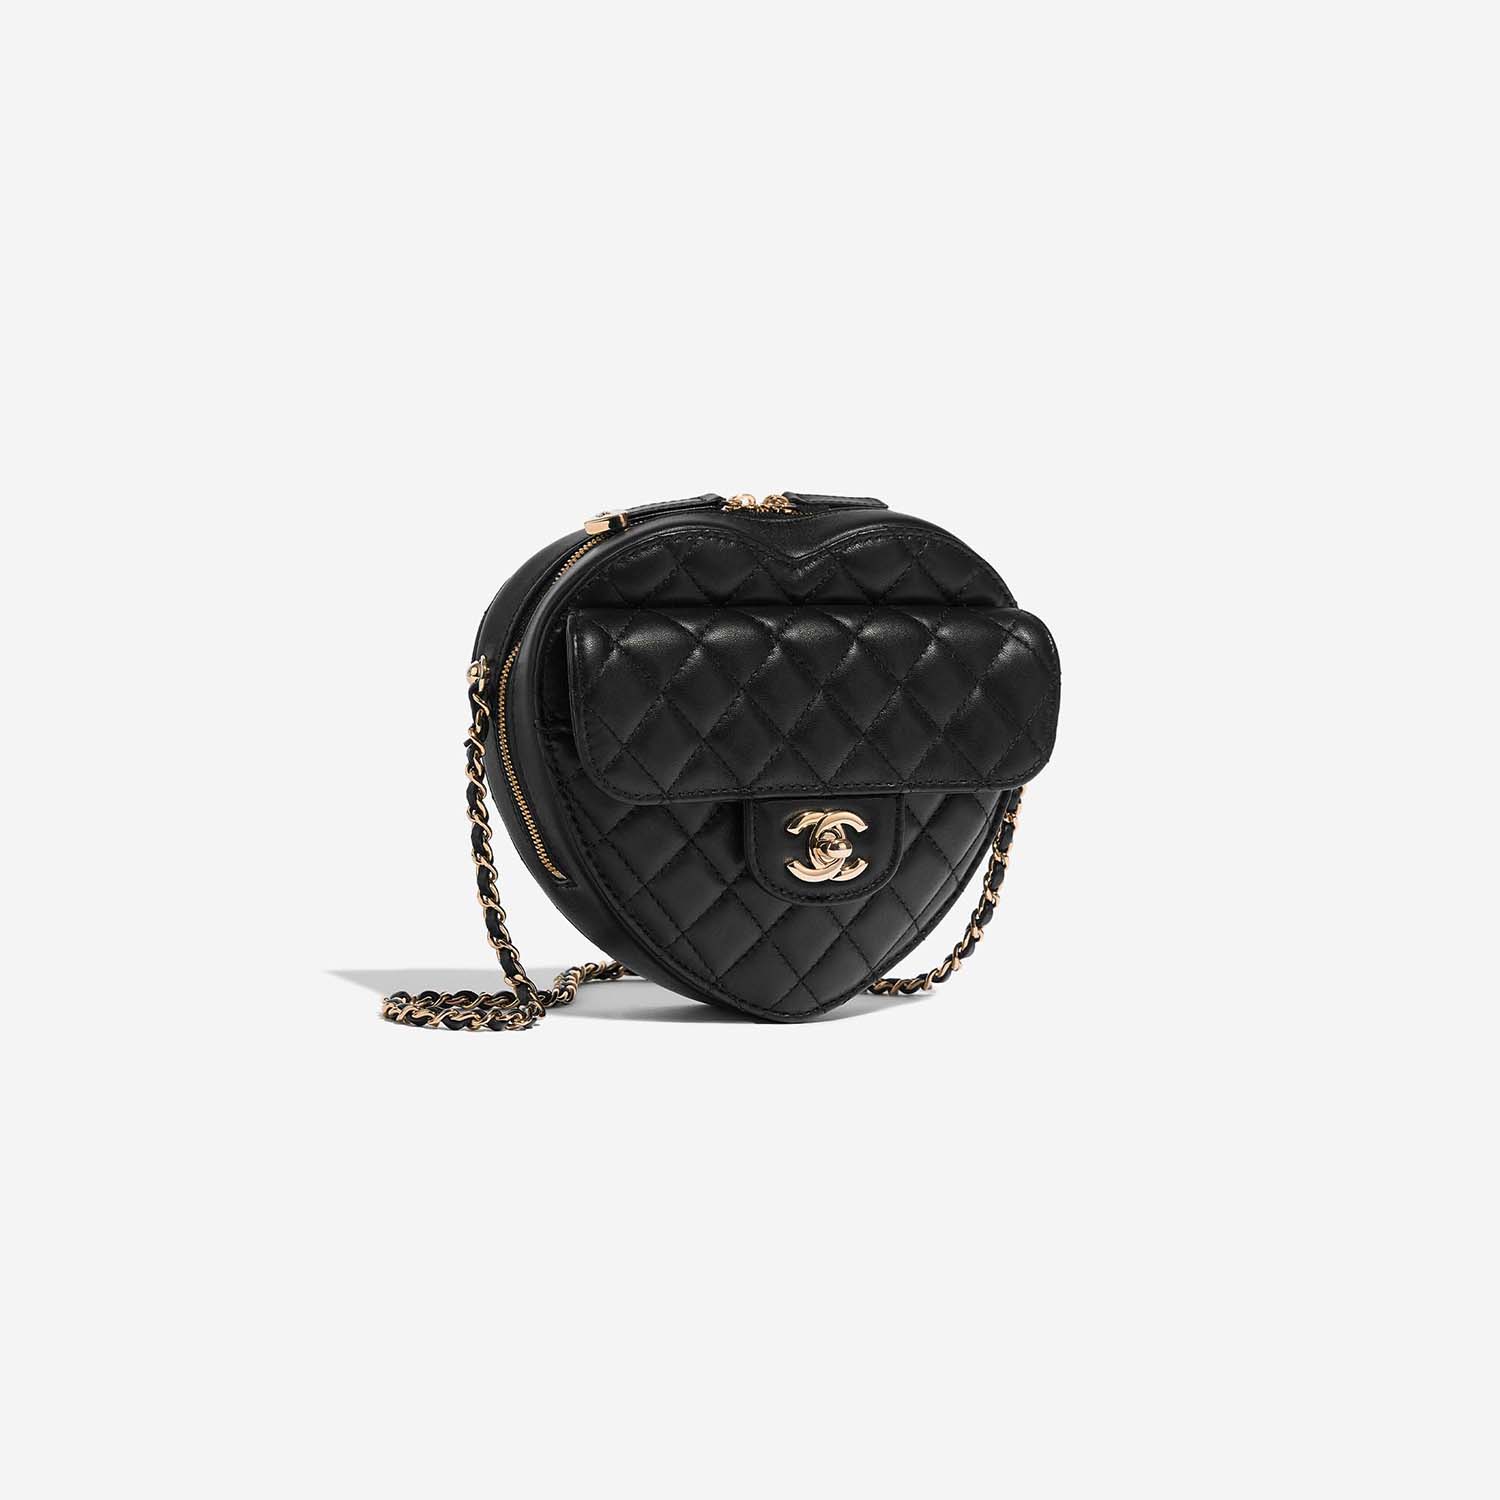 Chanel TimelessHeart Medium Black Side Front | Verkaufen Sie Ihre Designer-Tasche auf Saclab.com